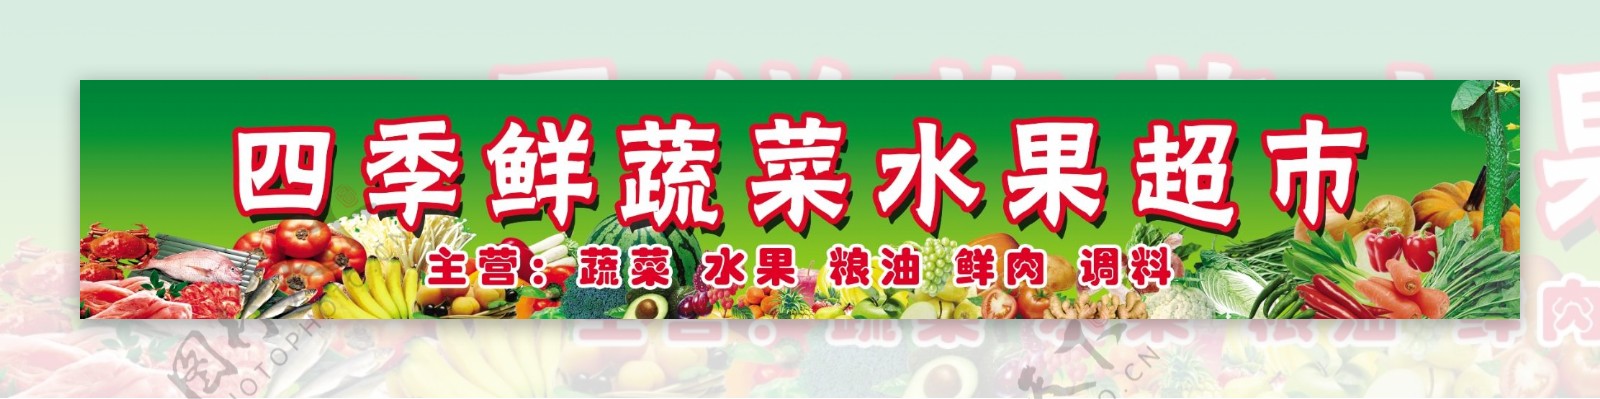 四季鲜蔬菜水果超市图片